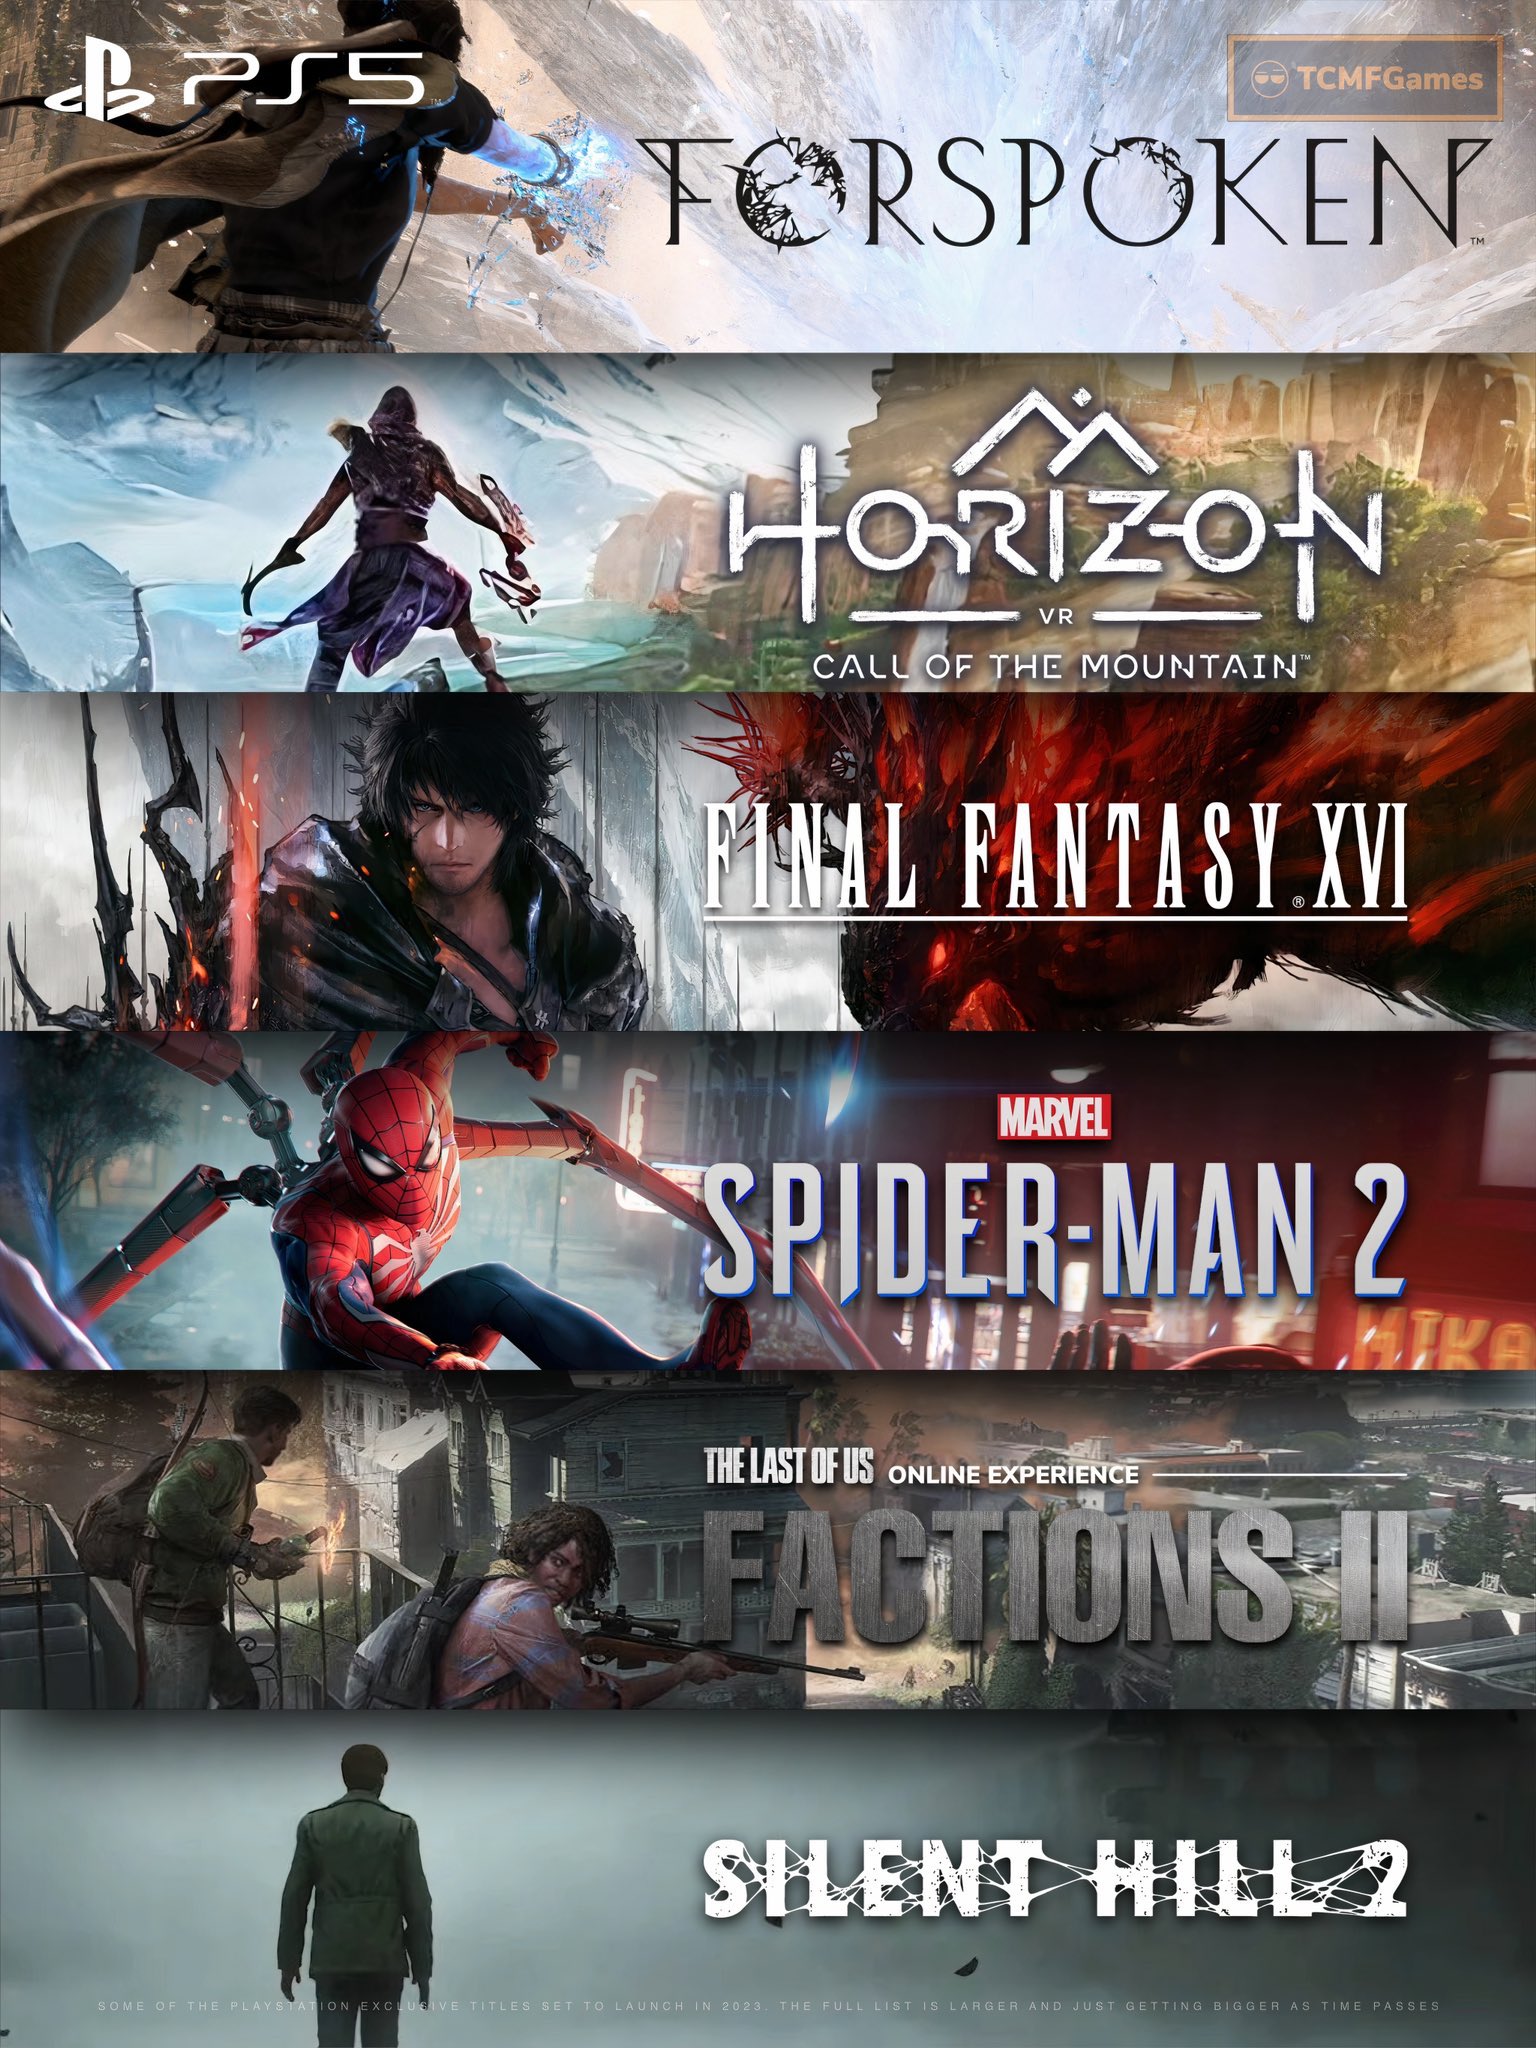 Quais os principais exclusivos da PlayStation para 2023?